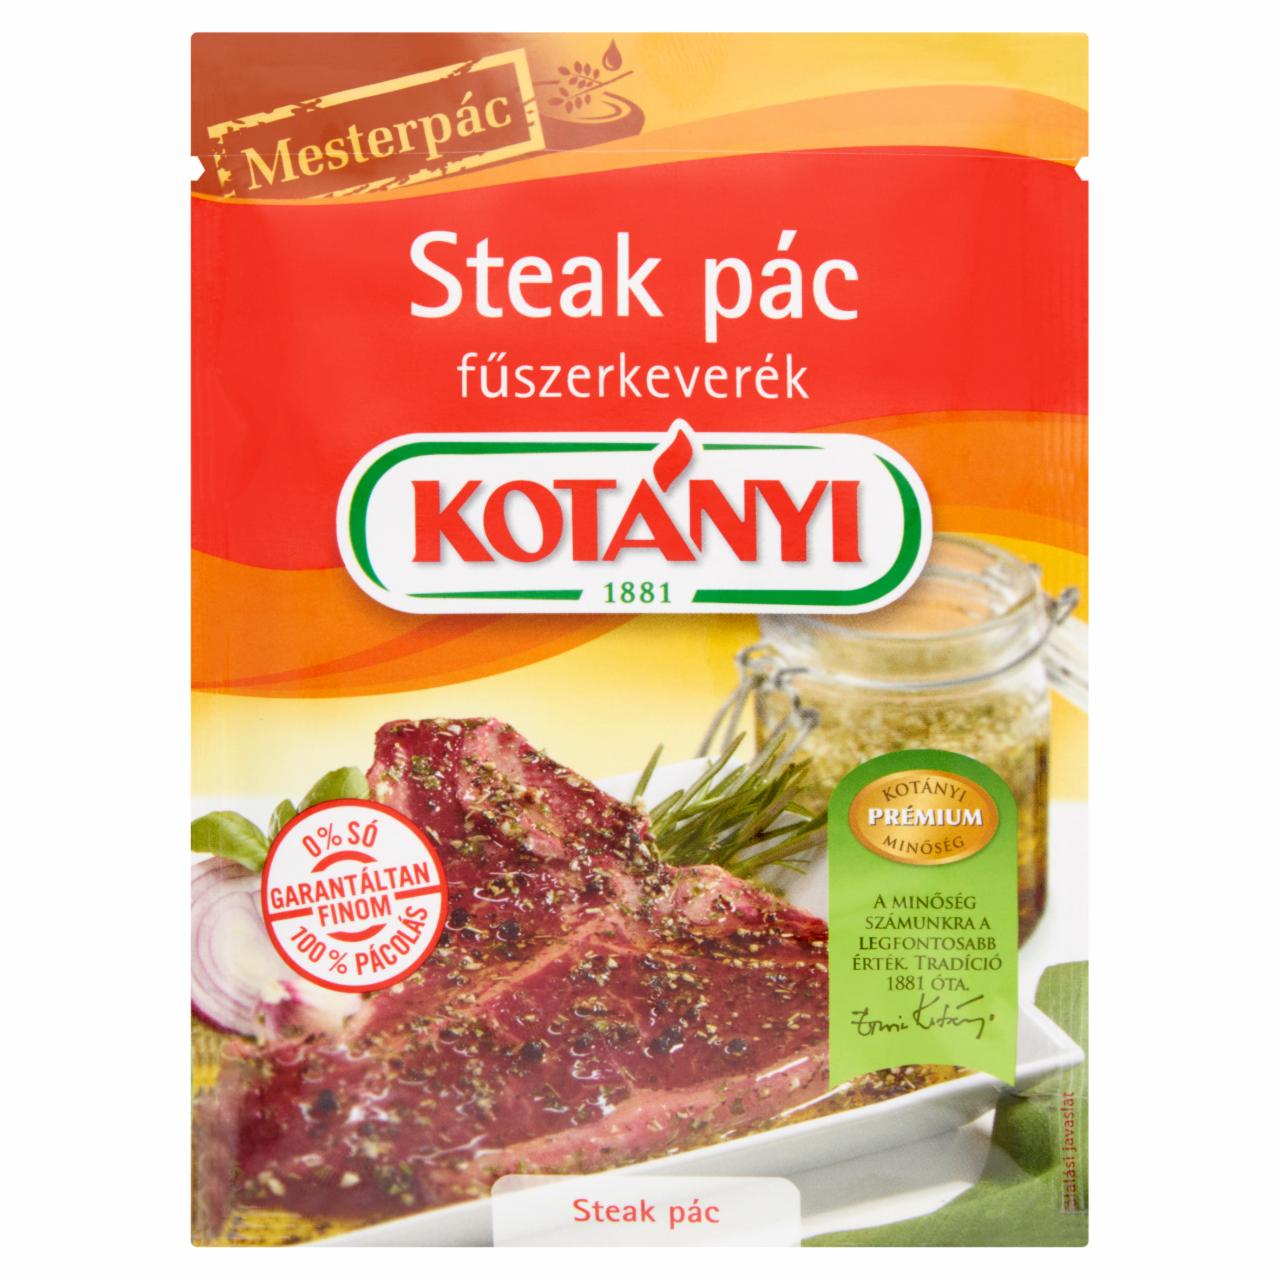 Képek - Kotányi Mesterpác steak pác fűszerkeverék 30 g